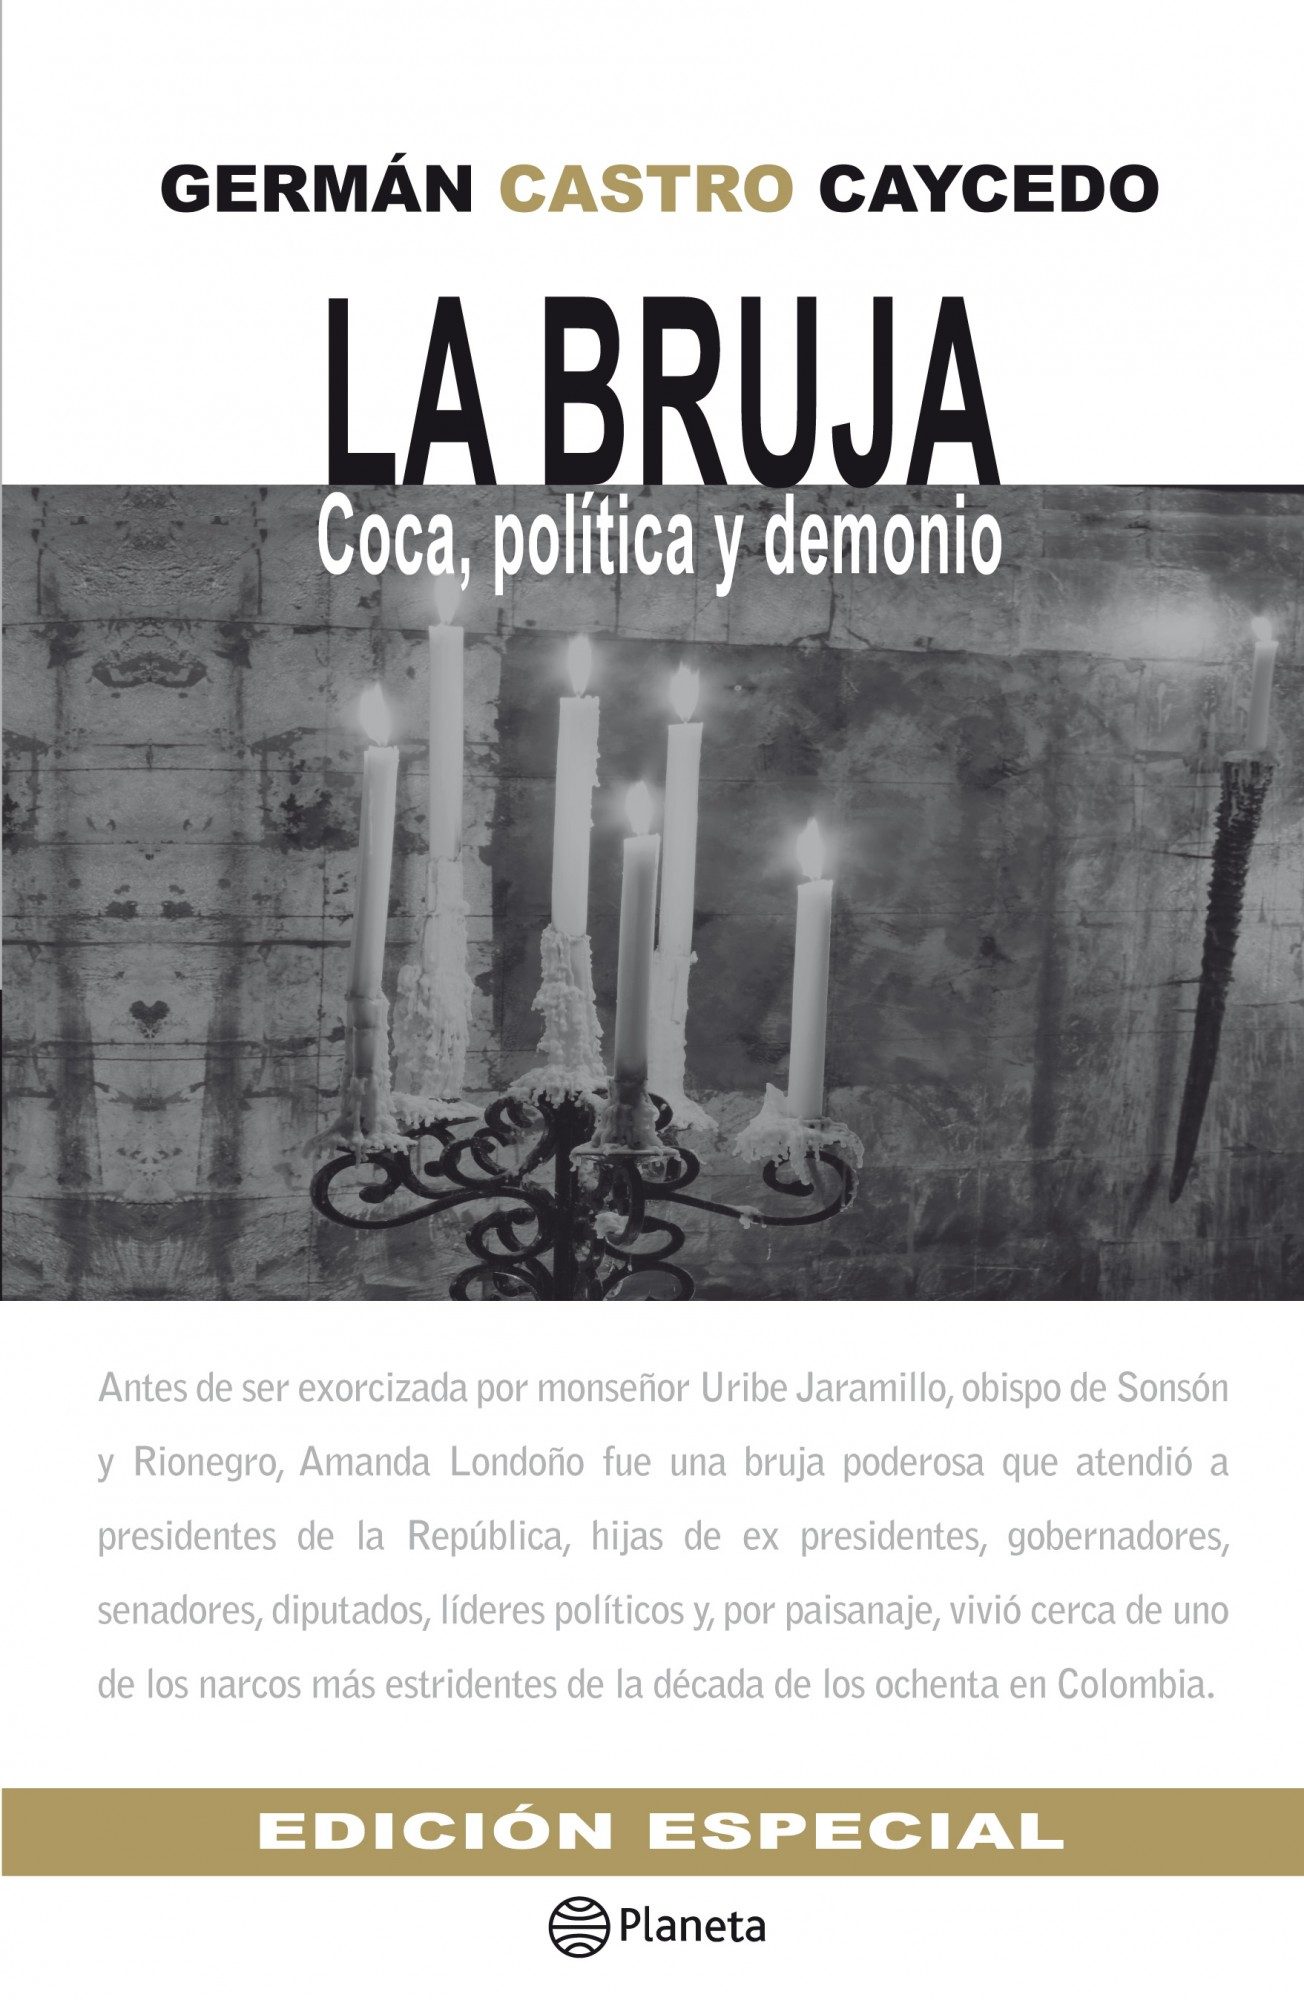 Download free La Bruja German Castro Caicedo Pdf Descargar